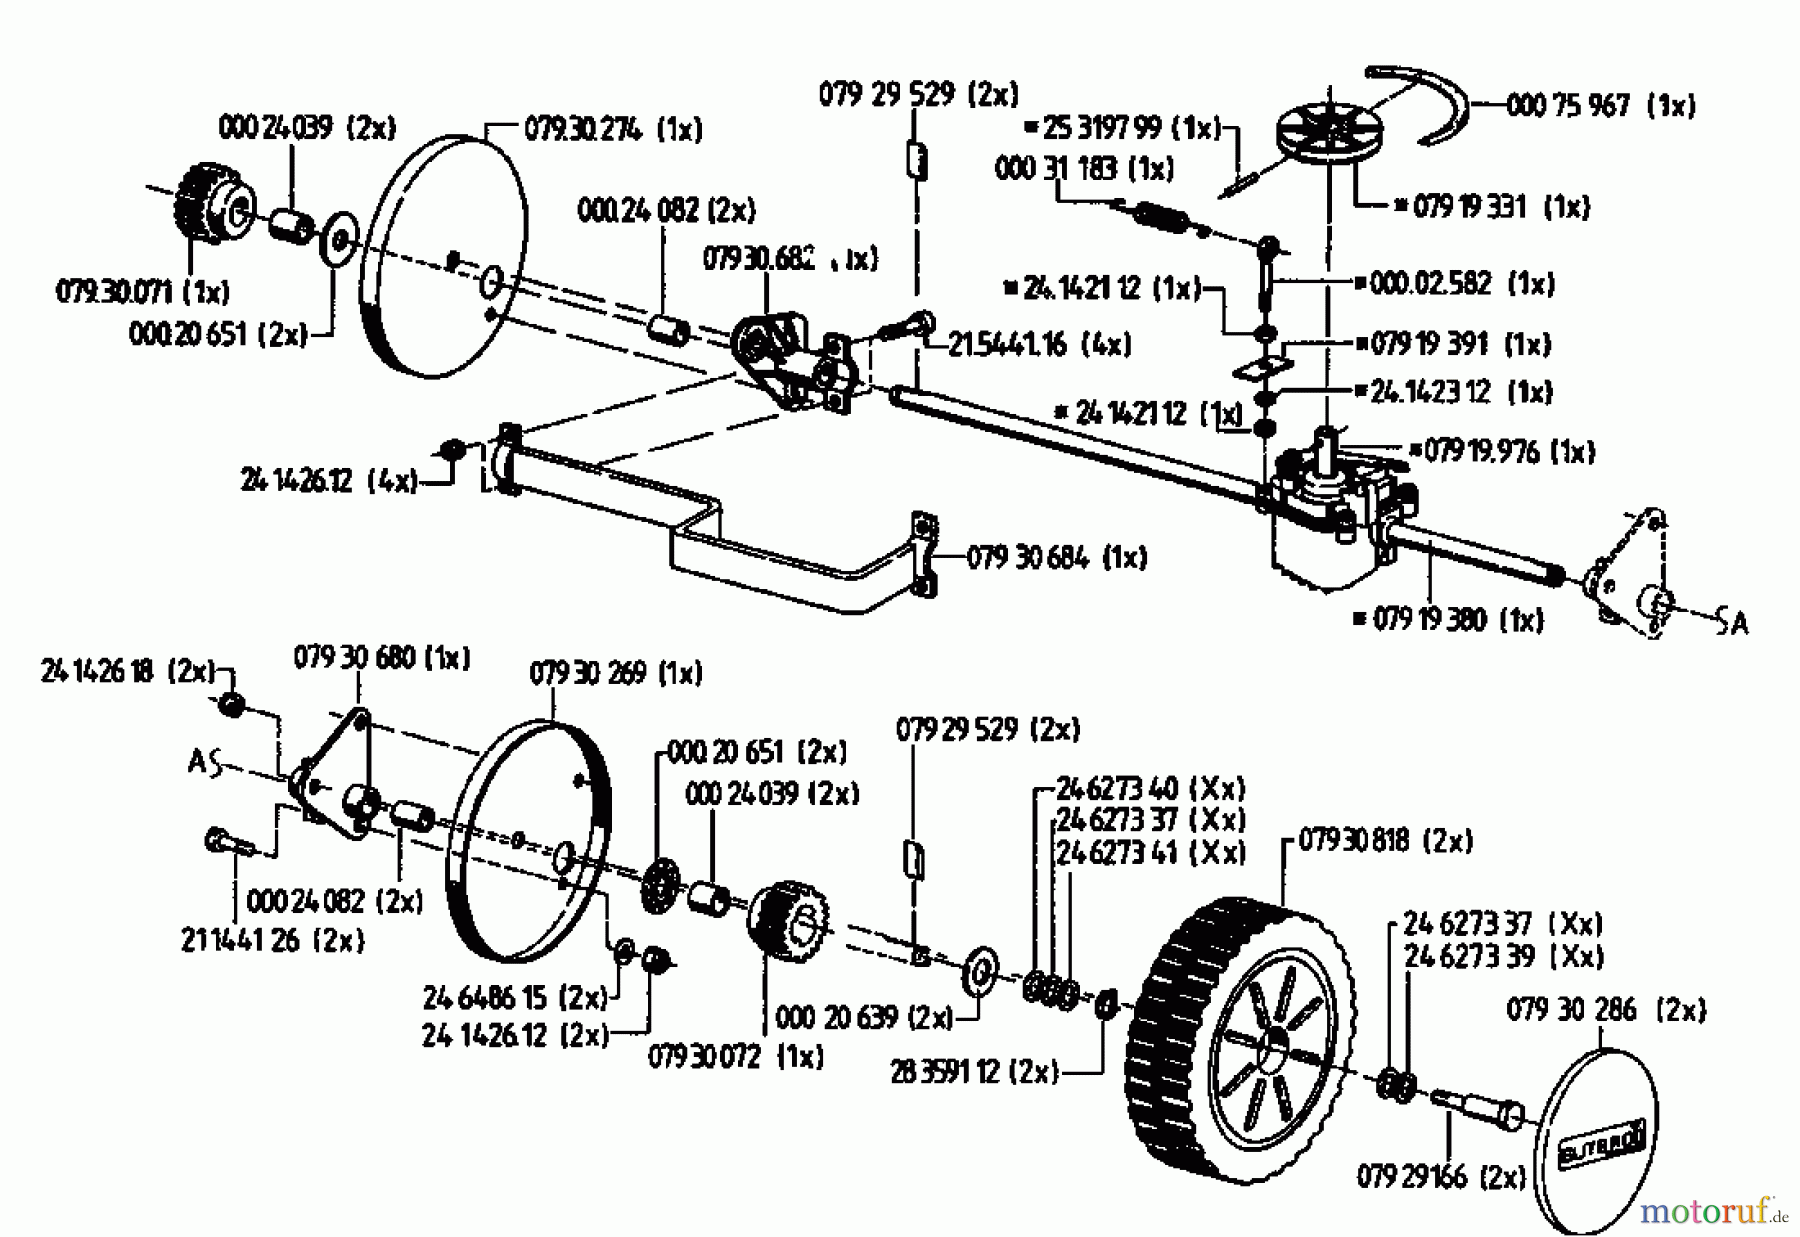  Gutbrod Motormäher mit Antrieb HB 48 RL 02815.01  (1994) Getriebe, Räder